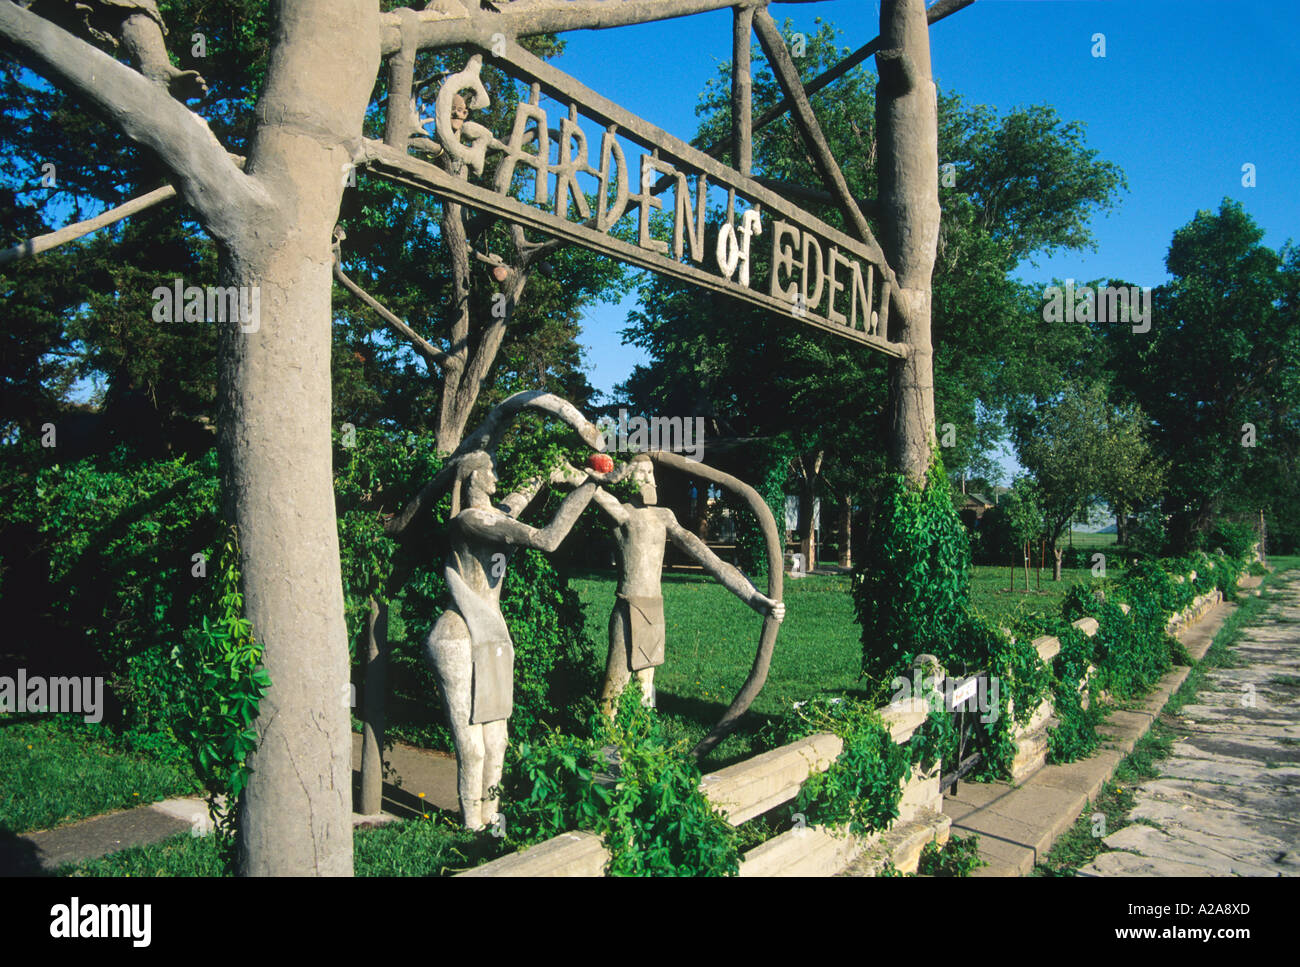 Le Jardin d'Eden est un jalon dans l'art populaire de Lucas, Kansas. Banque D'Images